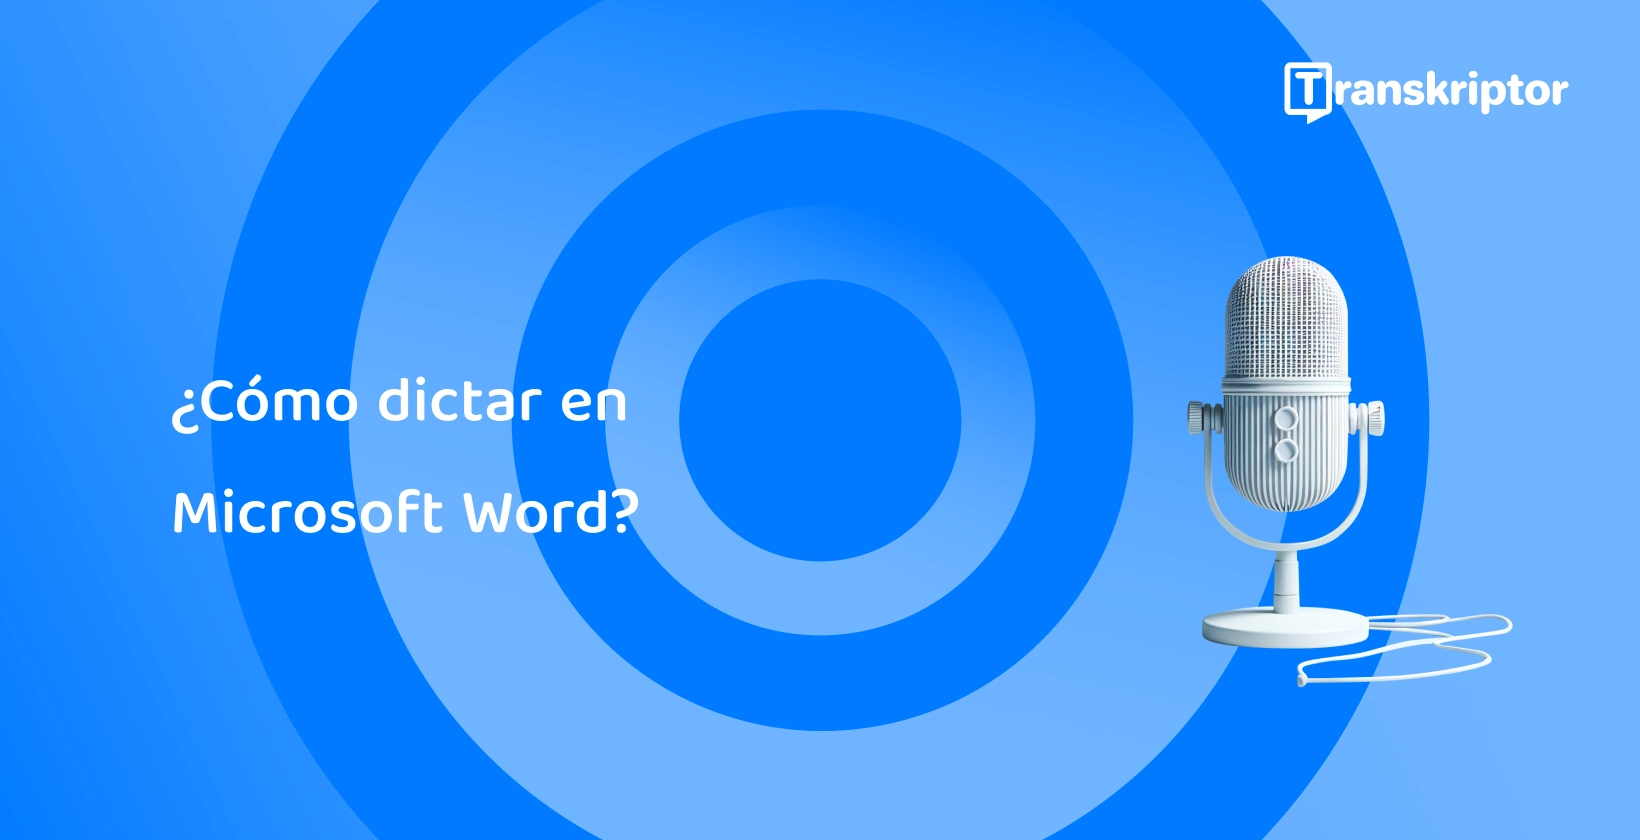 Un micrófono moderno sobre un fondo azul, que simboliza las funciones de dictado de voz en Microsoft Word.